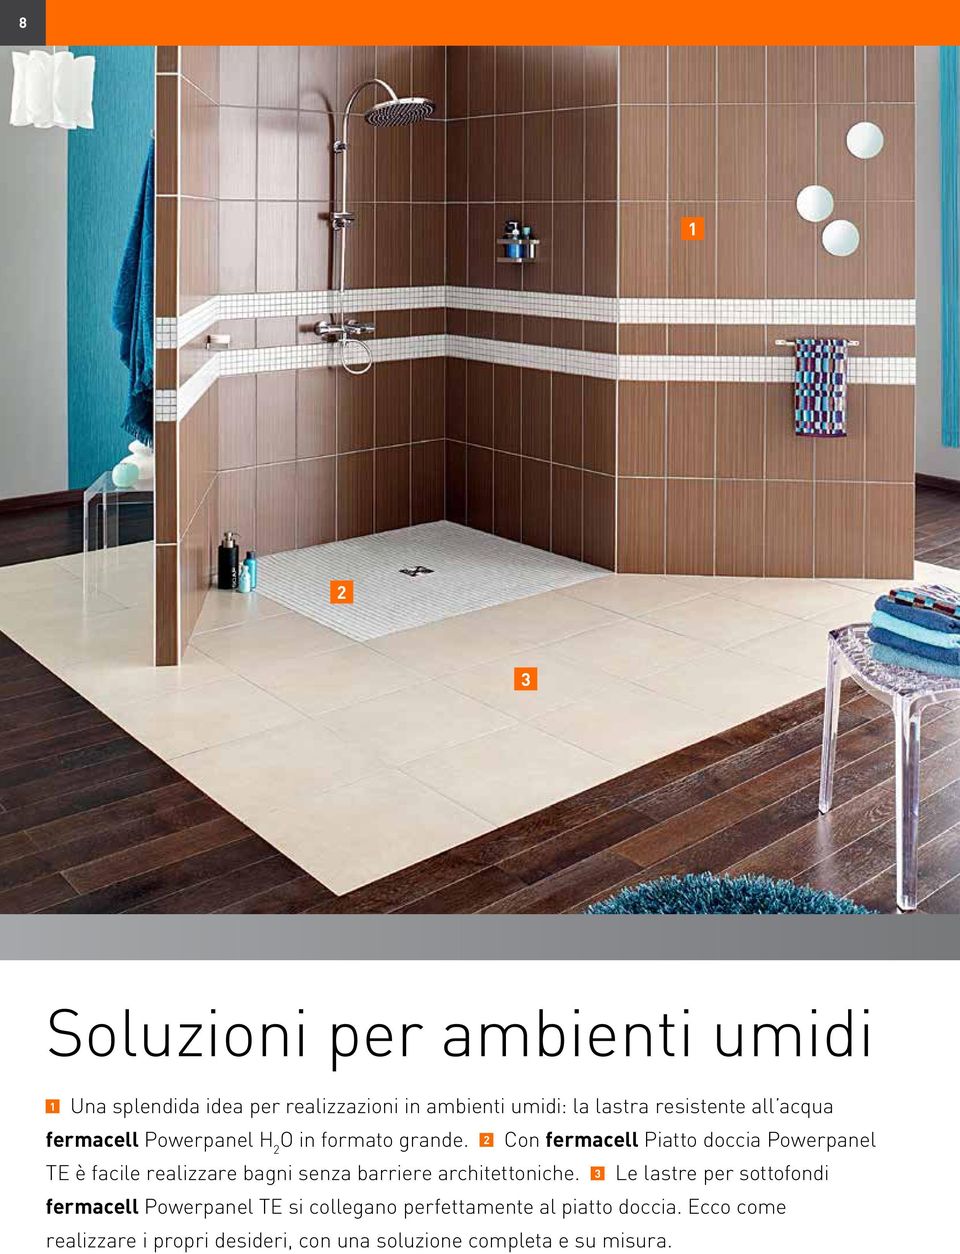 2 Con fermacell Piatto doccia Powerpanel TE è facile realizzare bagni senza barriere architettoniche.